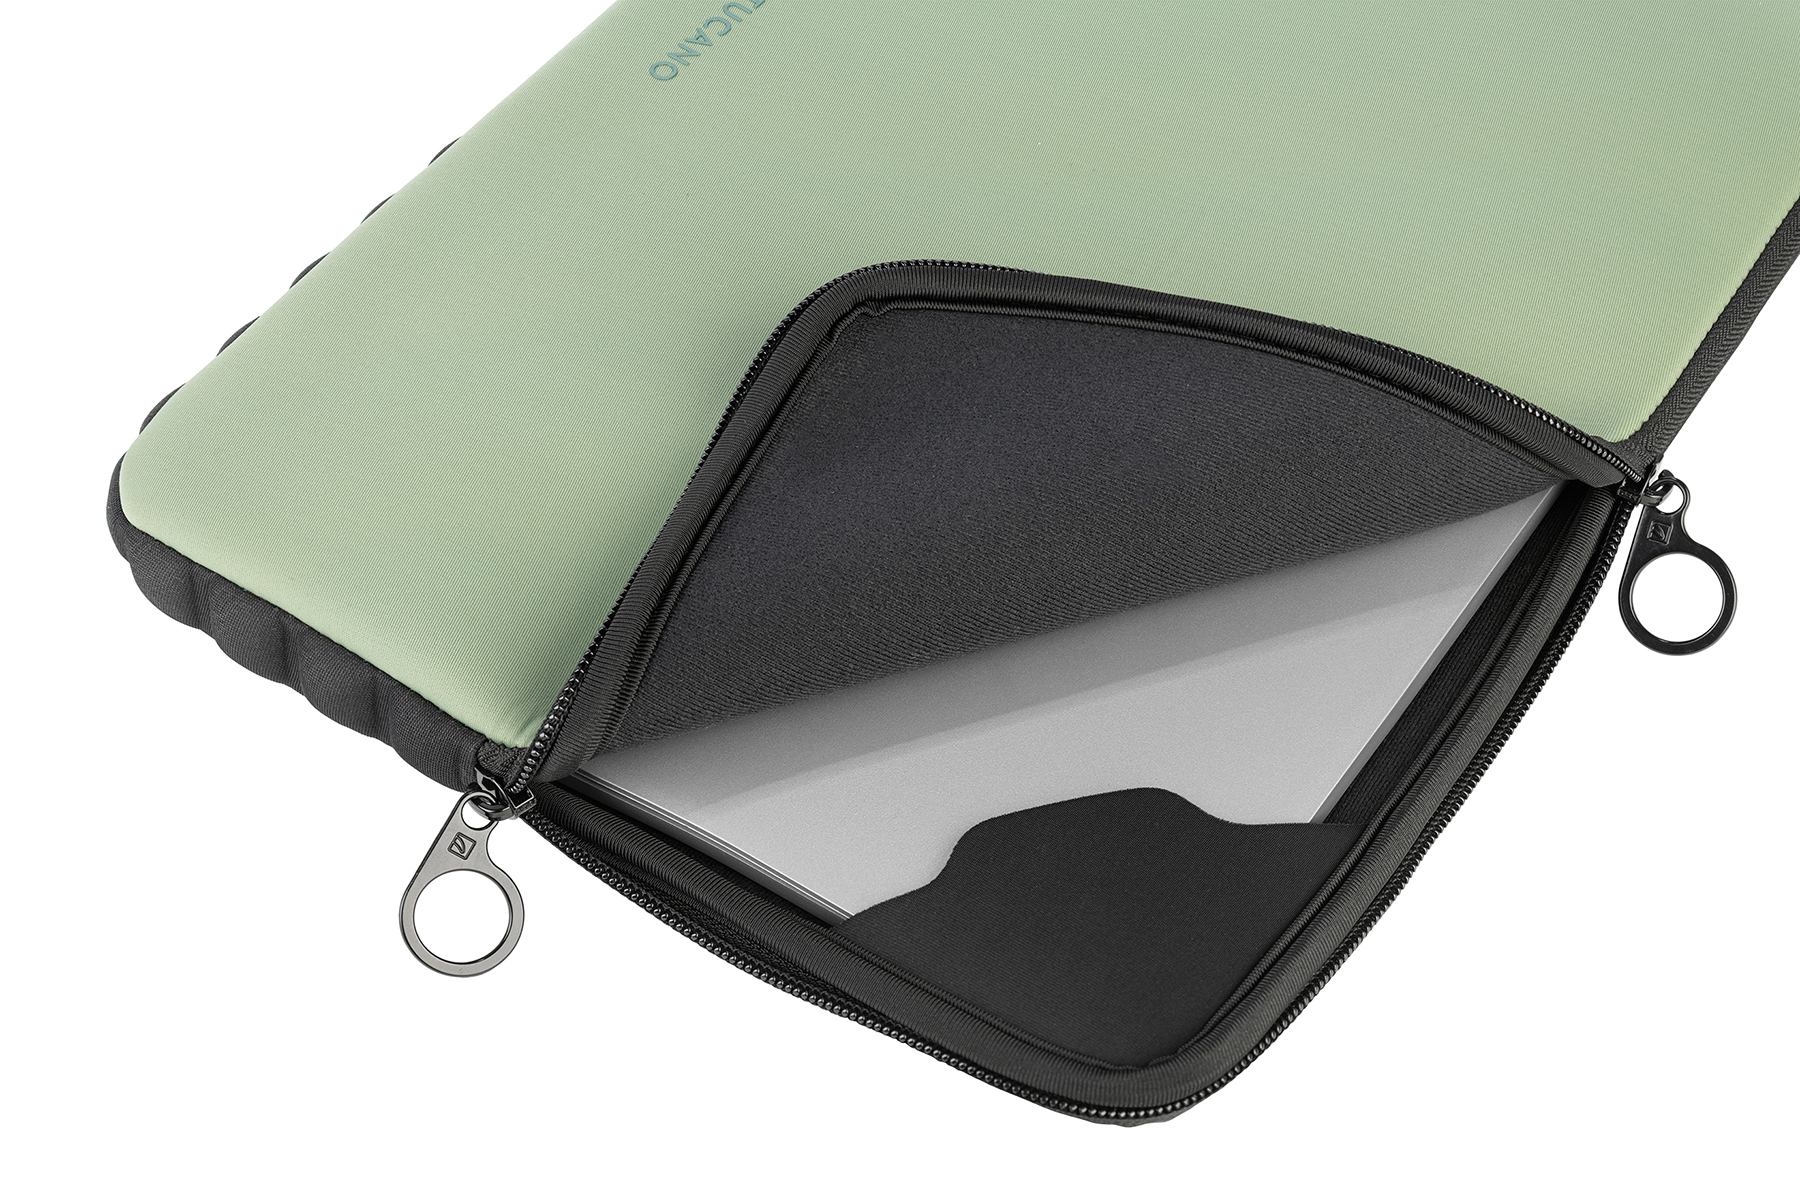 Offroad Universal Grün für Skin Sleeve Second Tasche Neopren, TUCANO Notebook